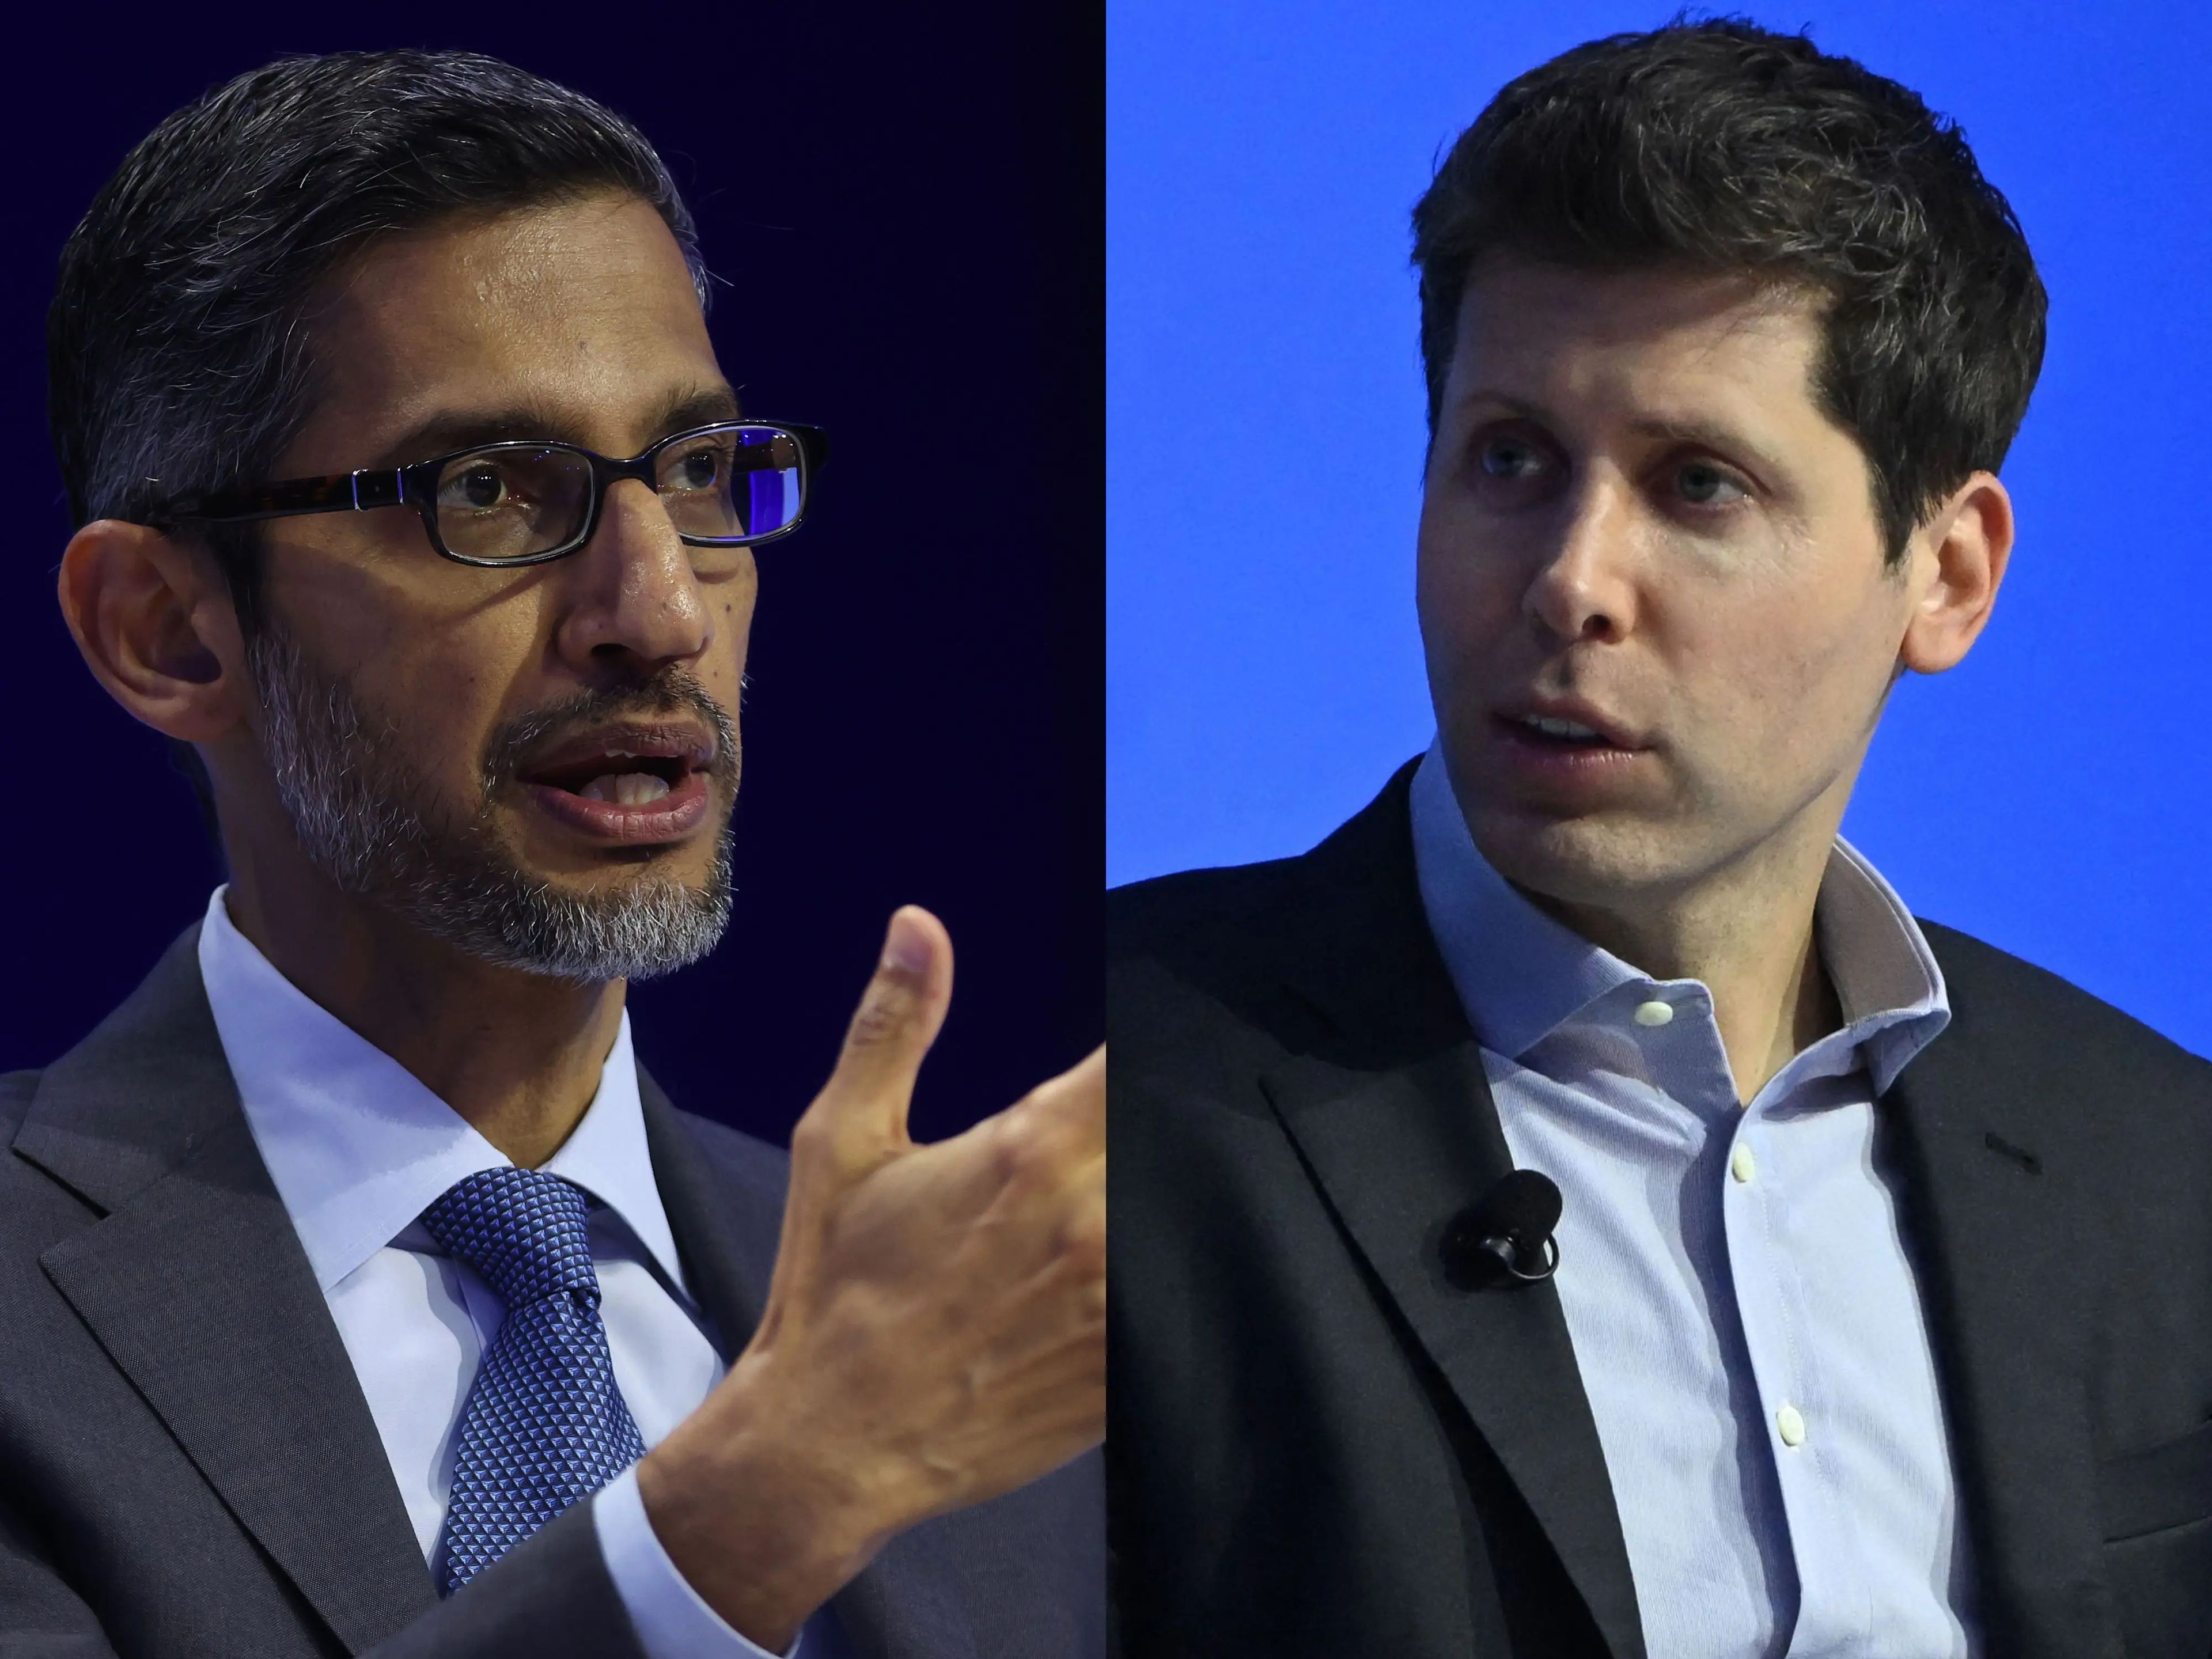 La carrera armamentística por la IA se recrudece entre el CEO de Google, Sundar Pichai, y el CEO de OpenAI, Sam Altman.